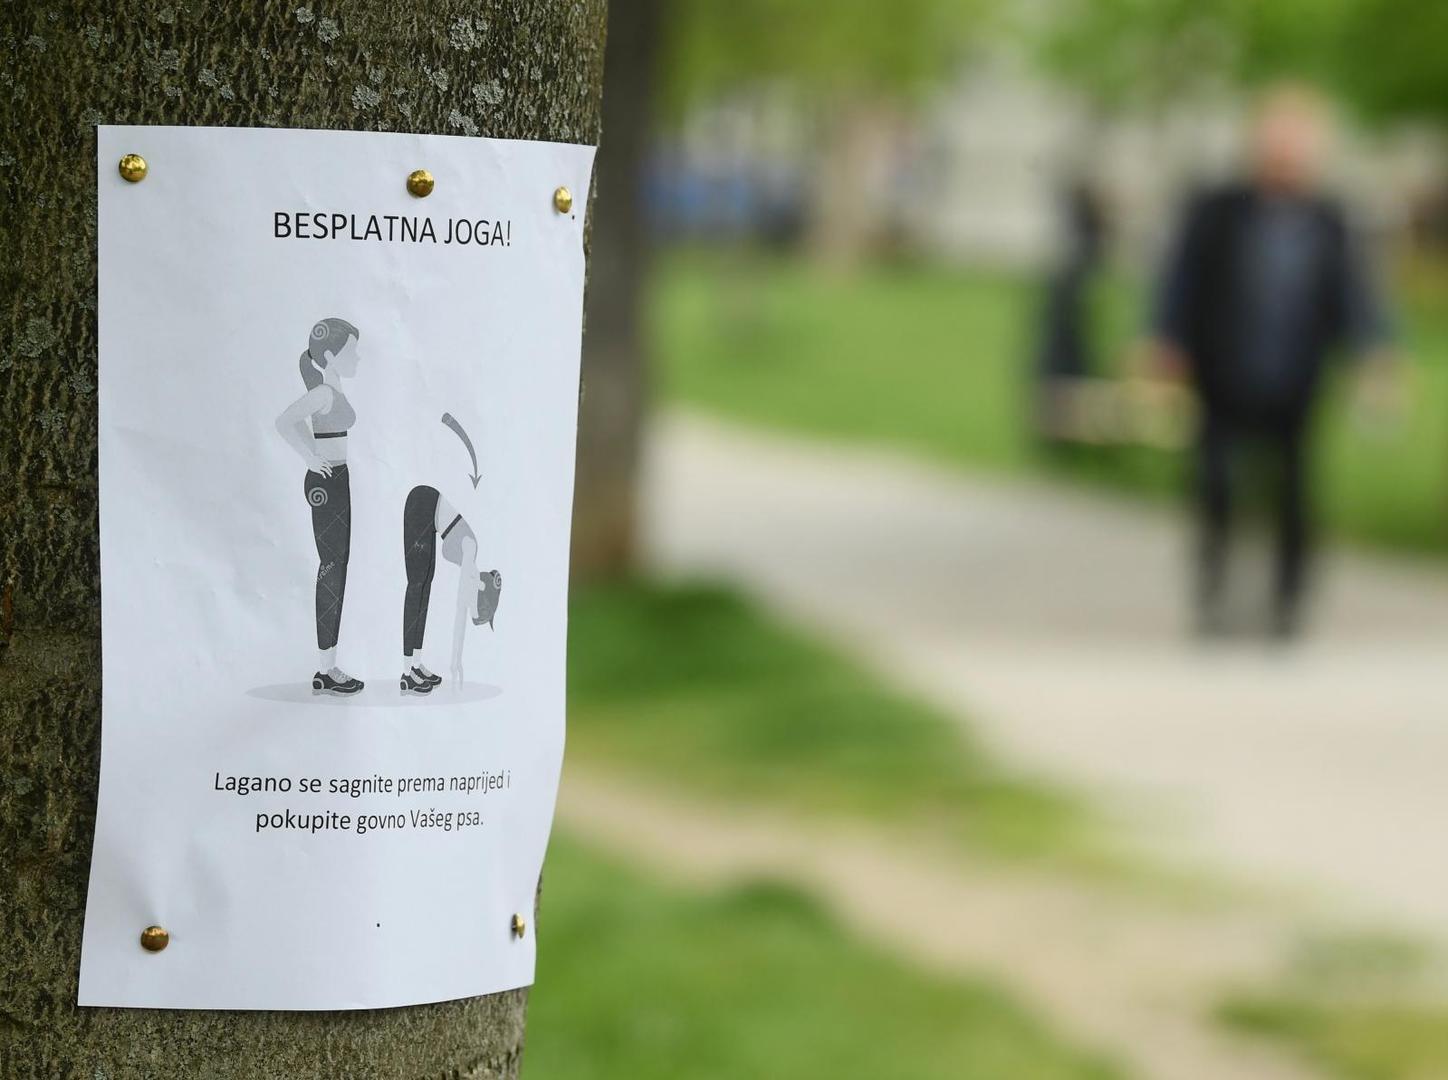 Na A4 papiru prezentirao je poruku kao besplatan tečaj joge te ju postavio na drvo.